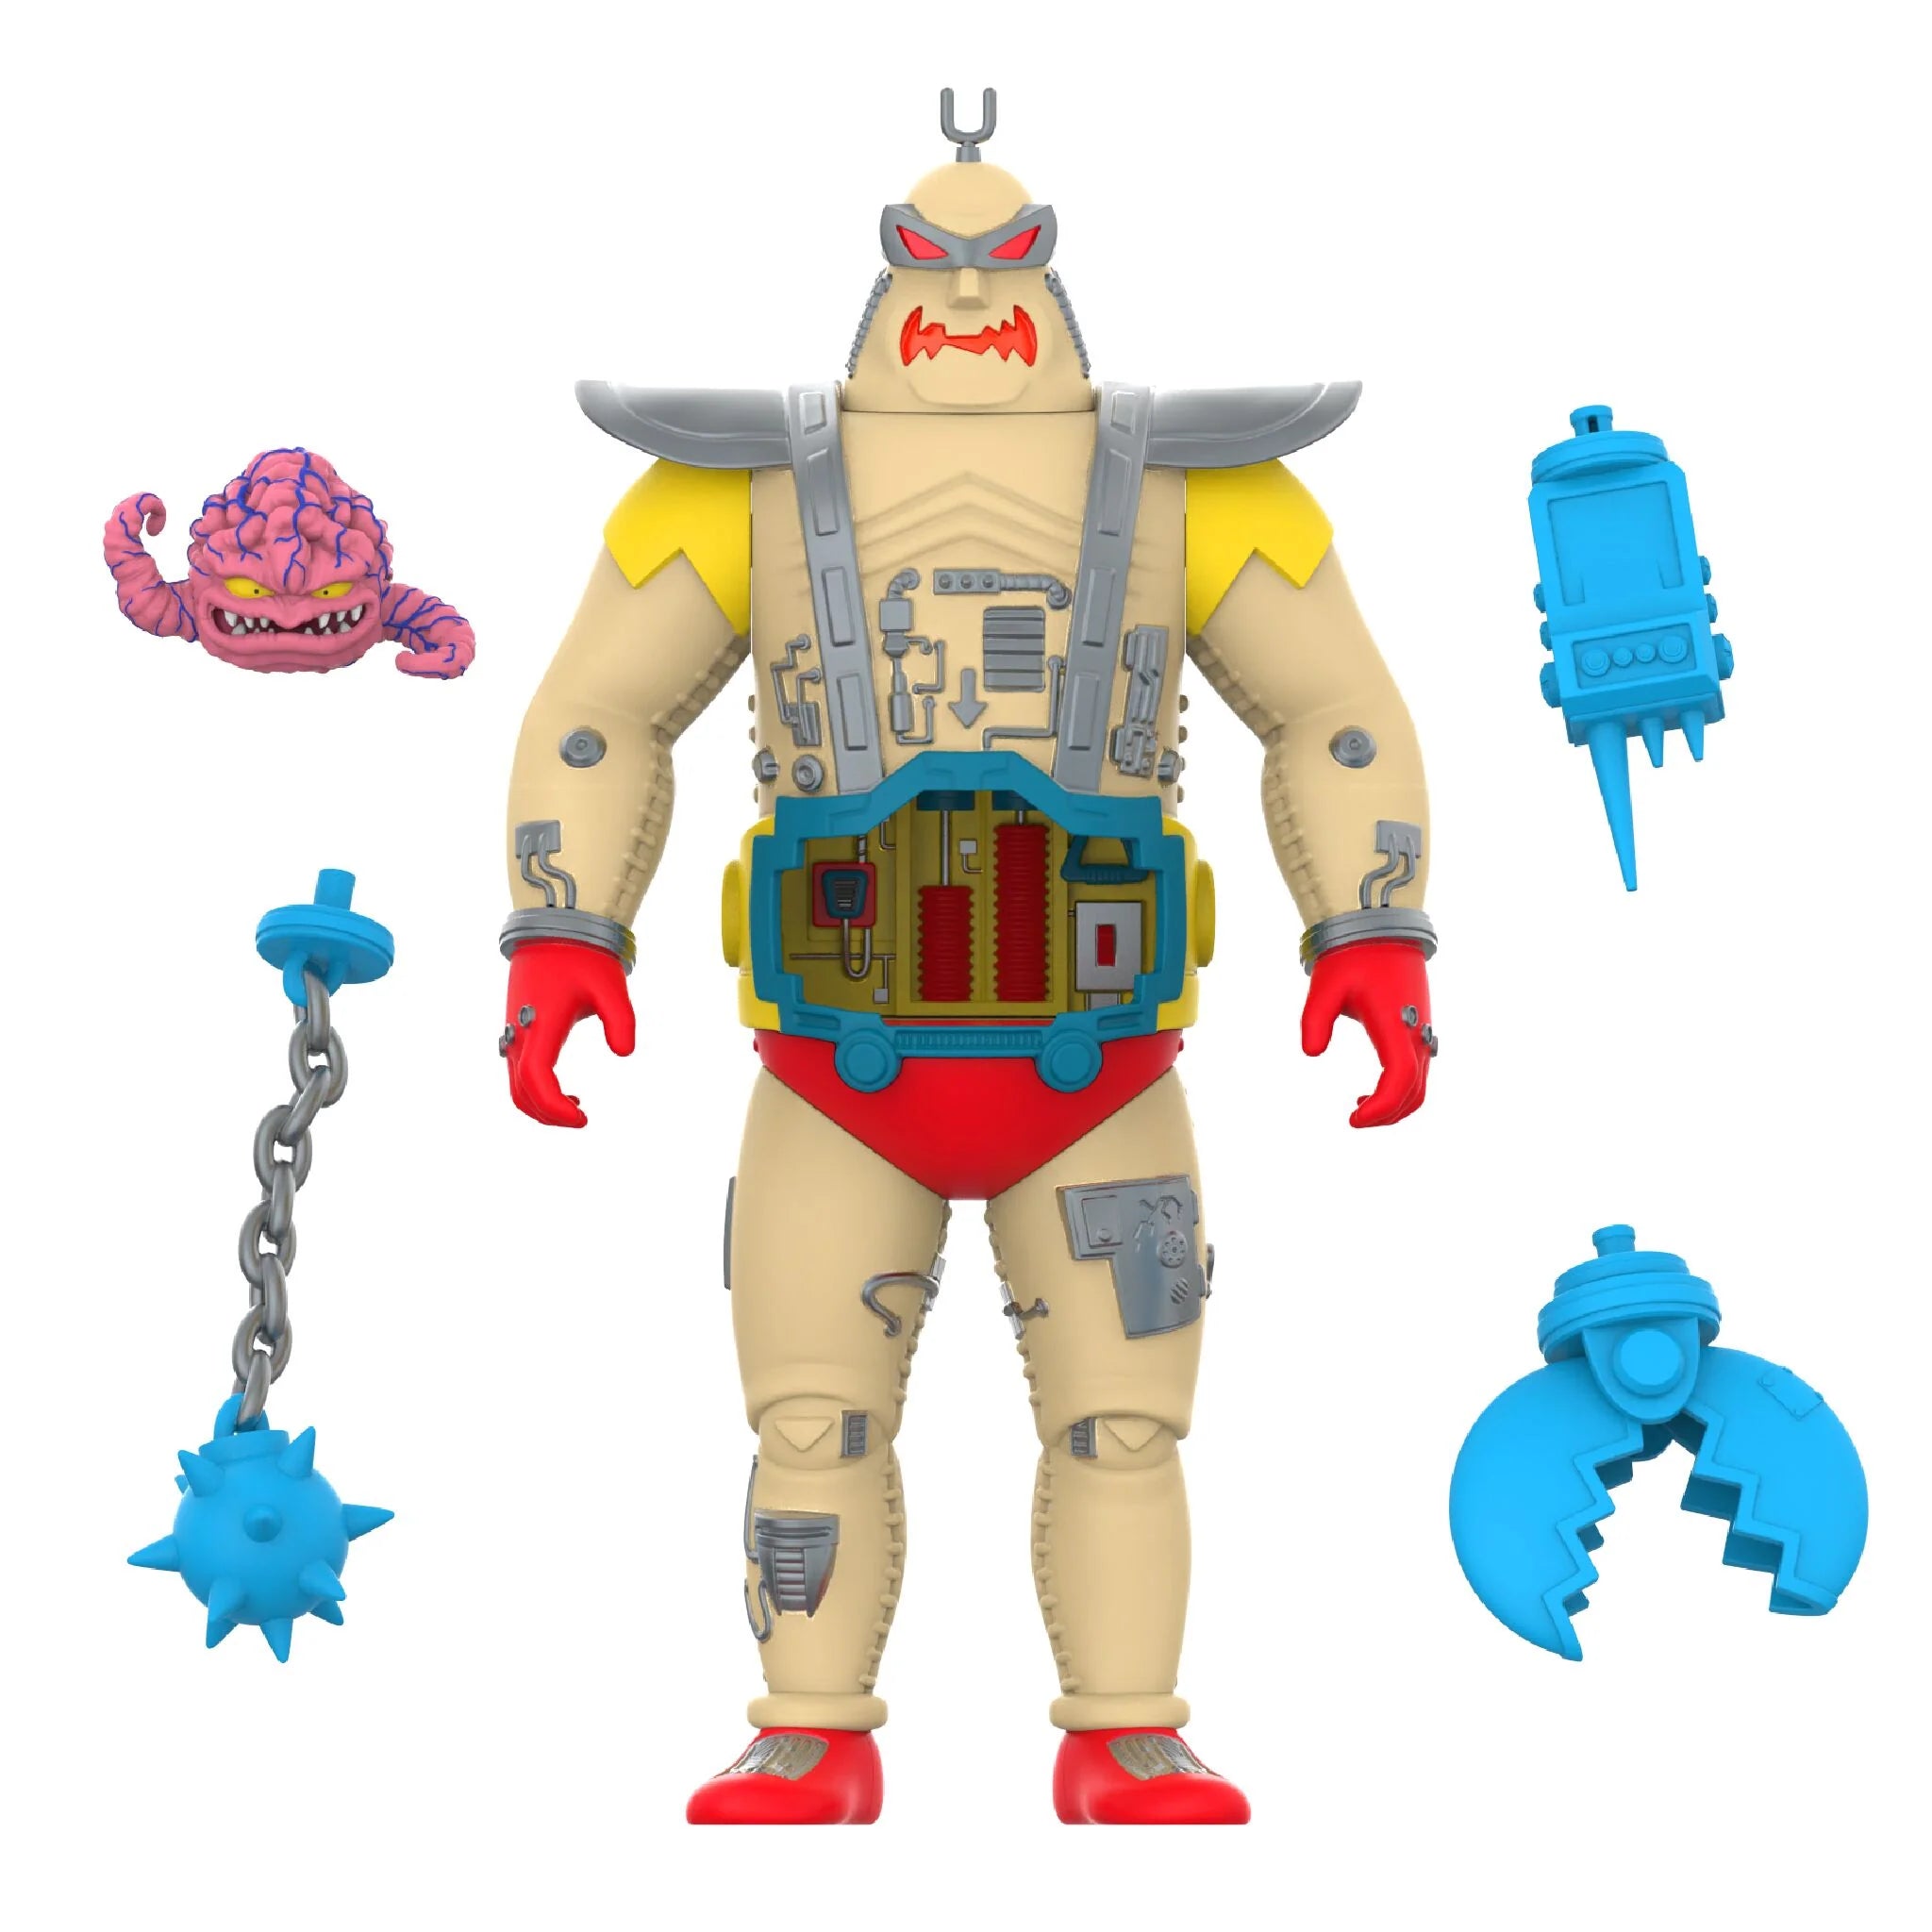 Super7 - Teenage Mutant Ninja Turtles - Super Cyborg Krang Android (Full Color) - Marvelous Toys